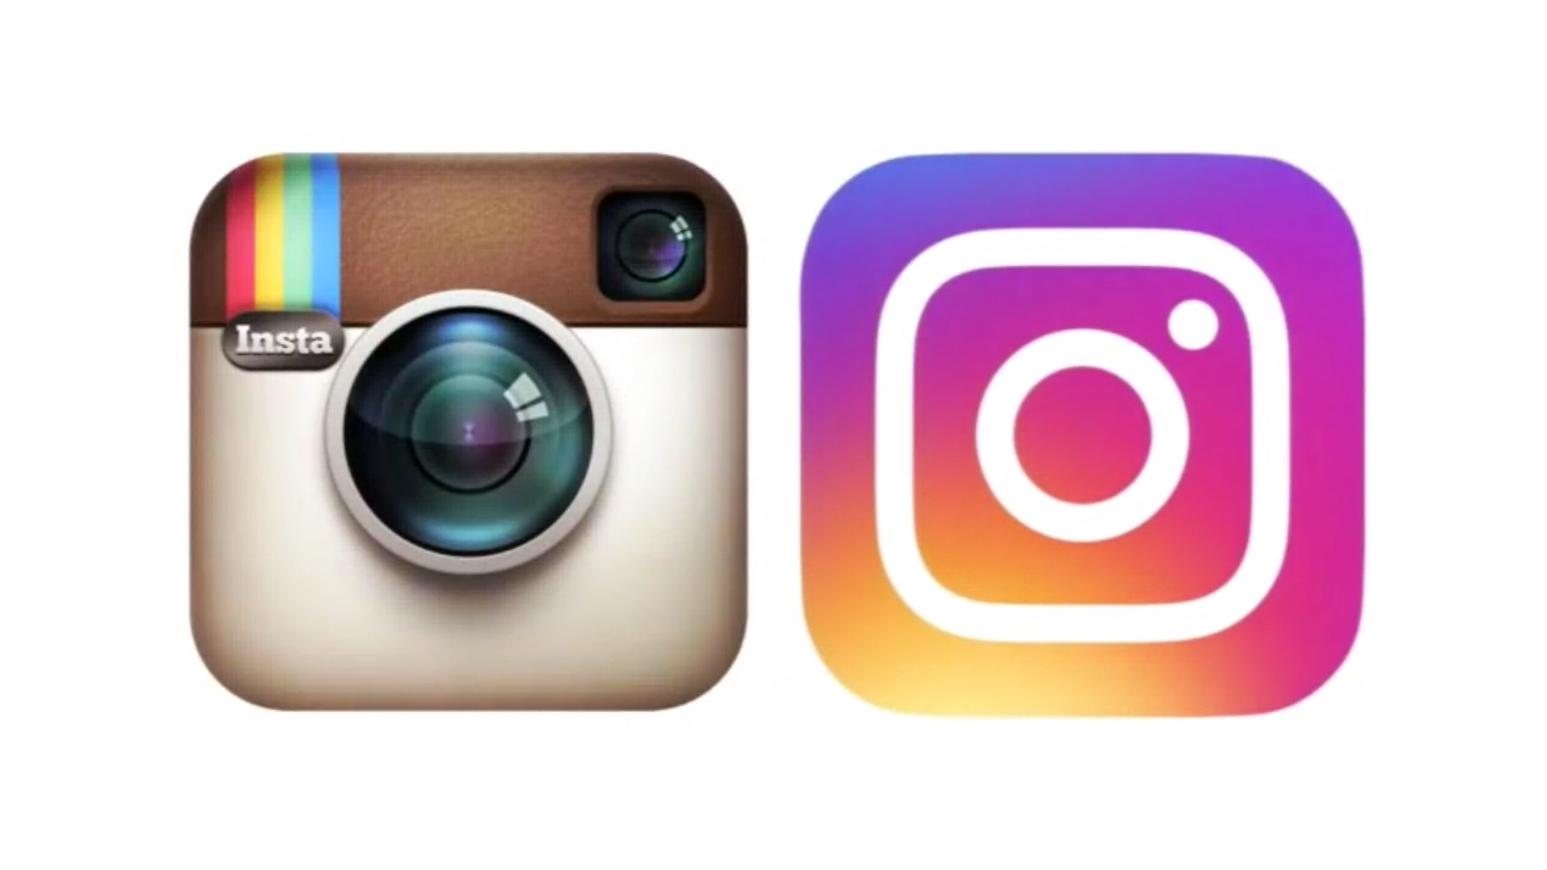 Review Instagram Versi Tizen Dan Perbandingannya Dengan OS Lain